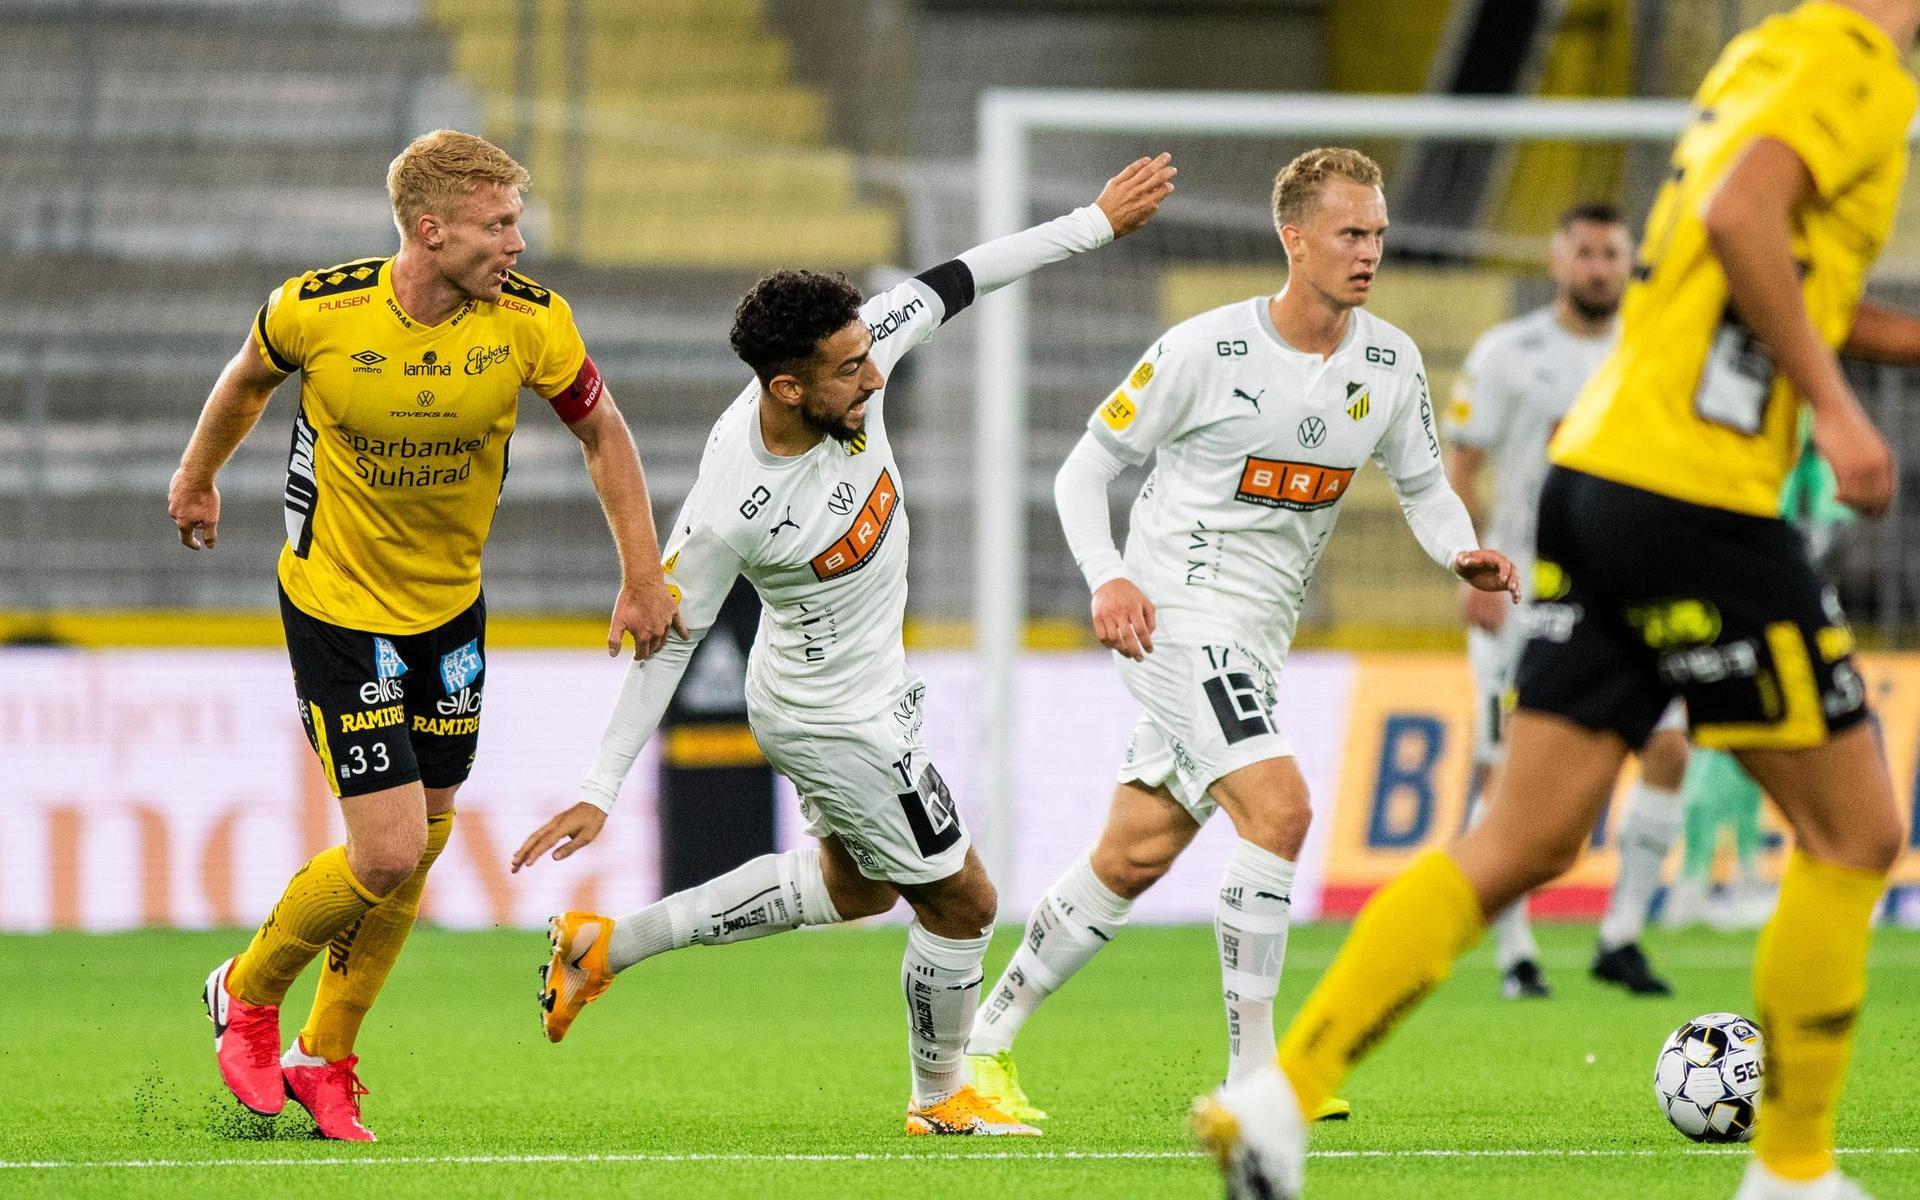 Elfsborgs Sivert Heltne Nilsen och Häckens Daleho Irandust under fotbollsmatchen i Allsvenskan mellan Elfsborg och Häcken.